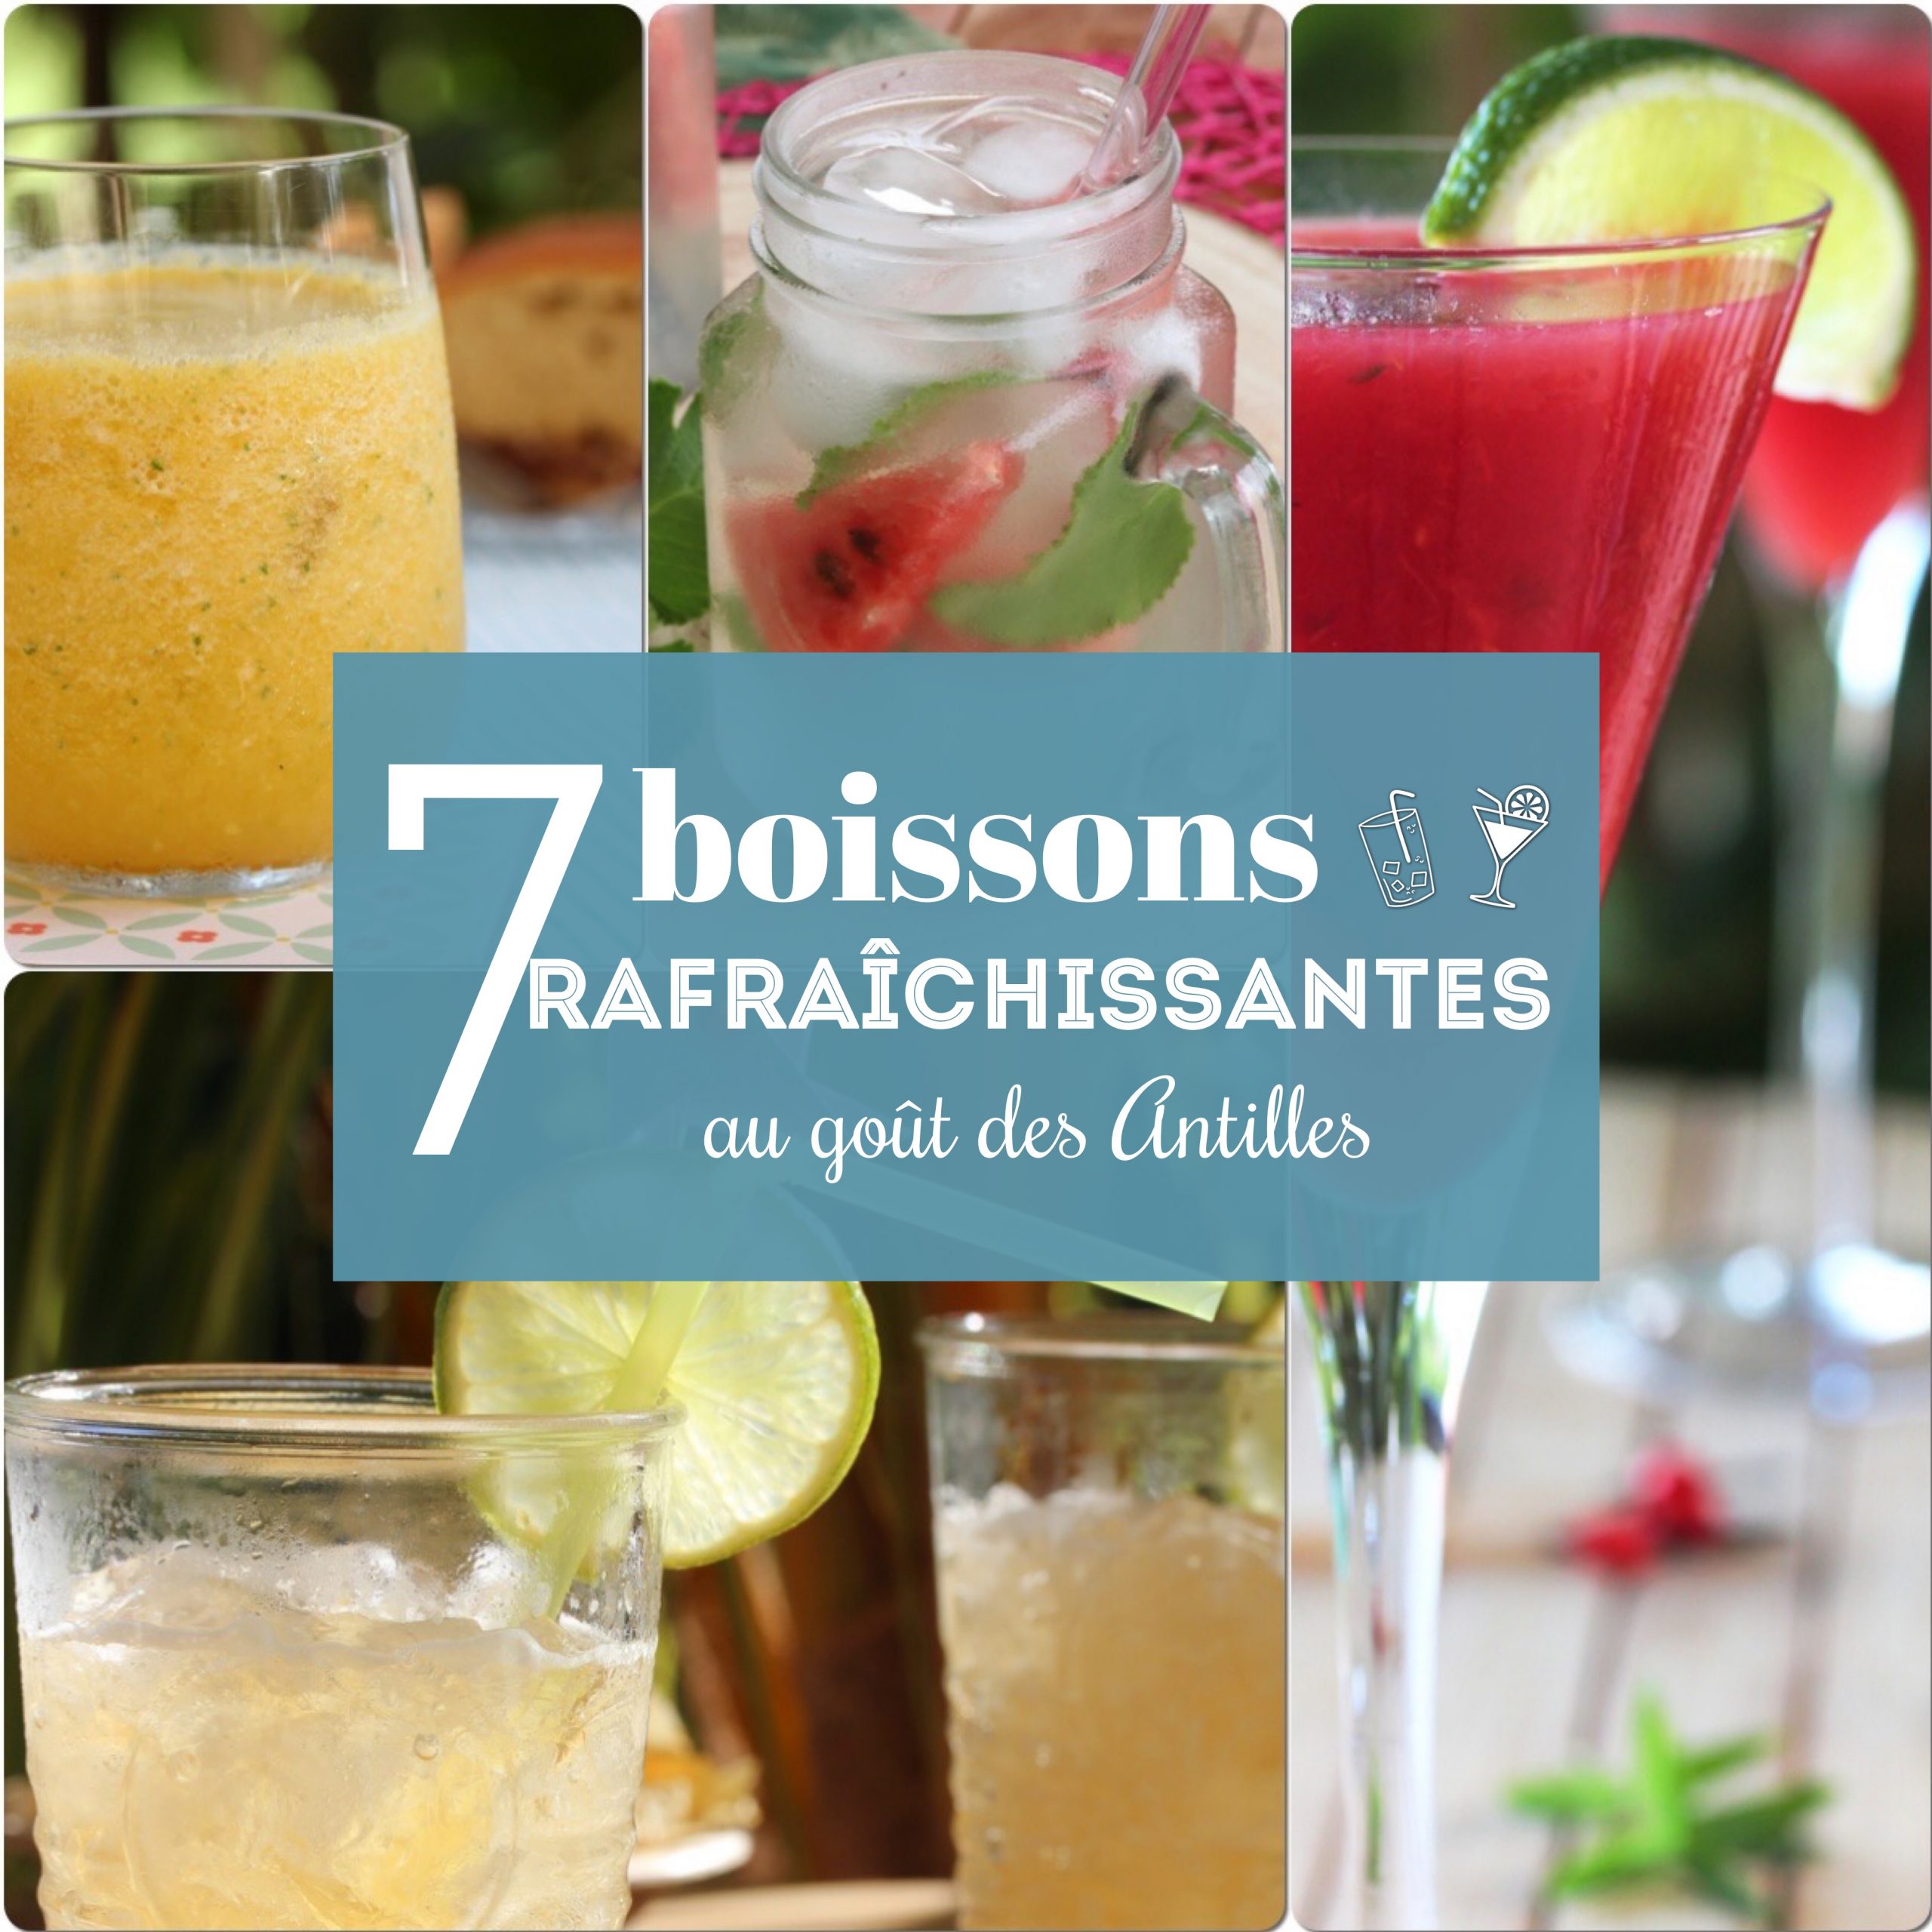 7 boissons rafraîchissantes au goût des Antilles